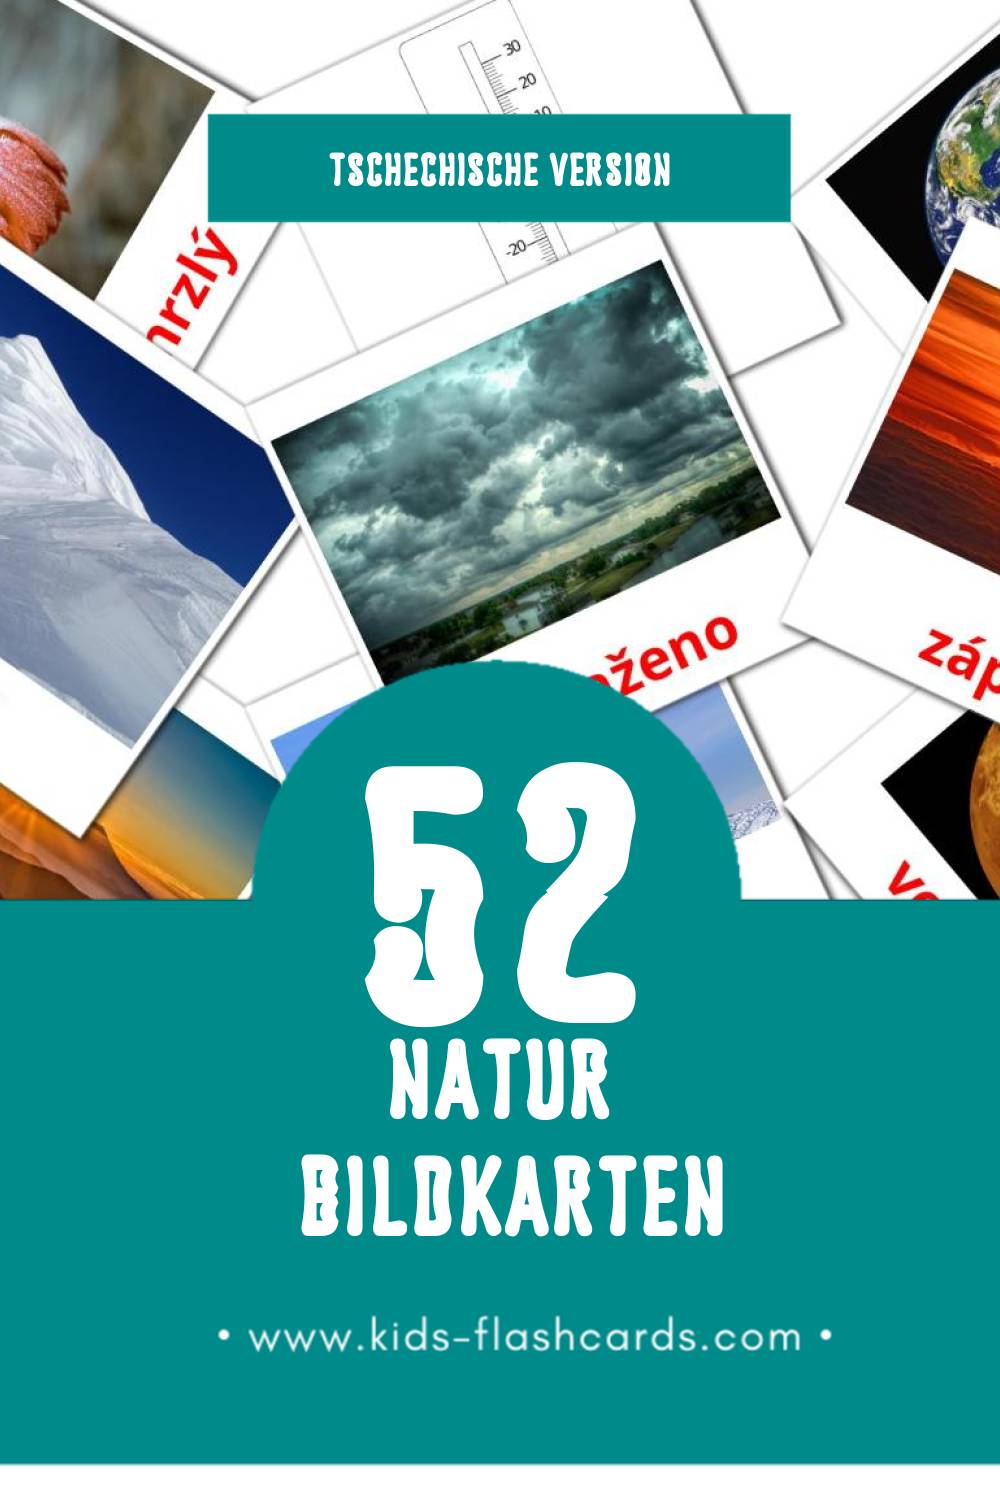 Visual Příroda Flashcards für Kleinkinder (52 Karten in Tschechisch)